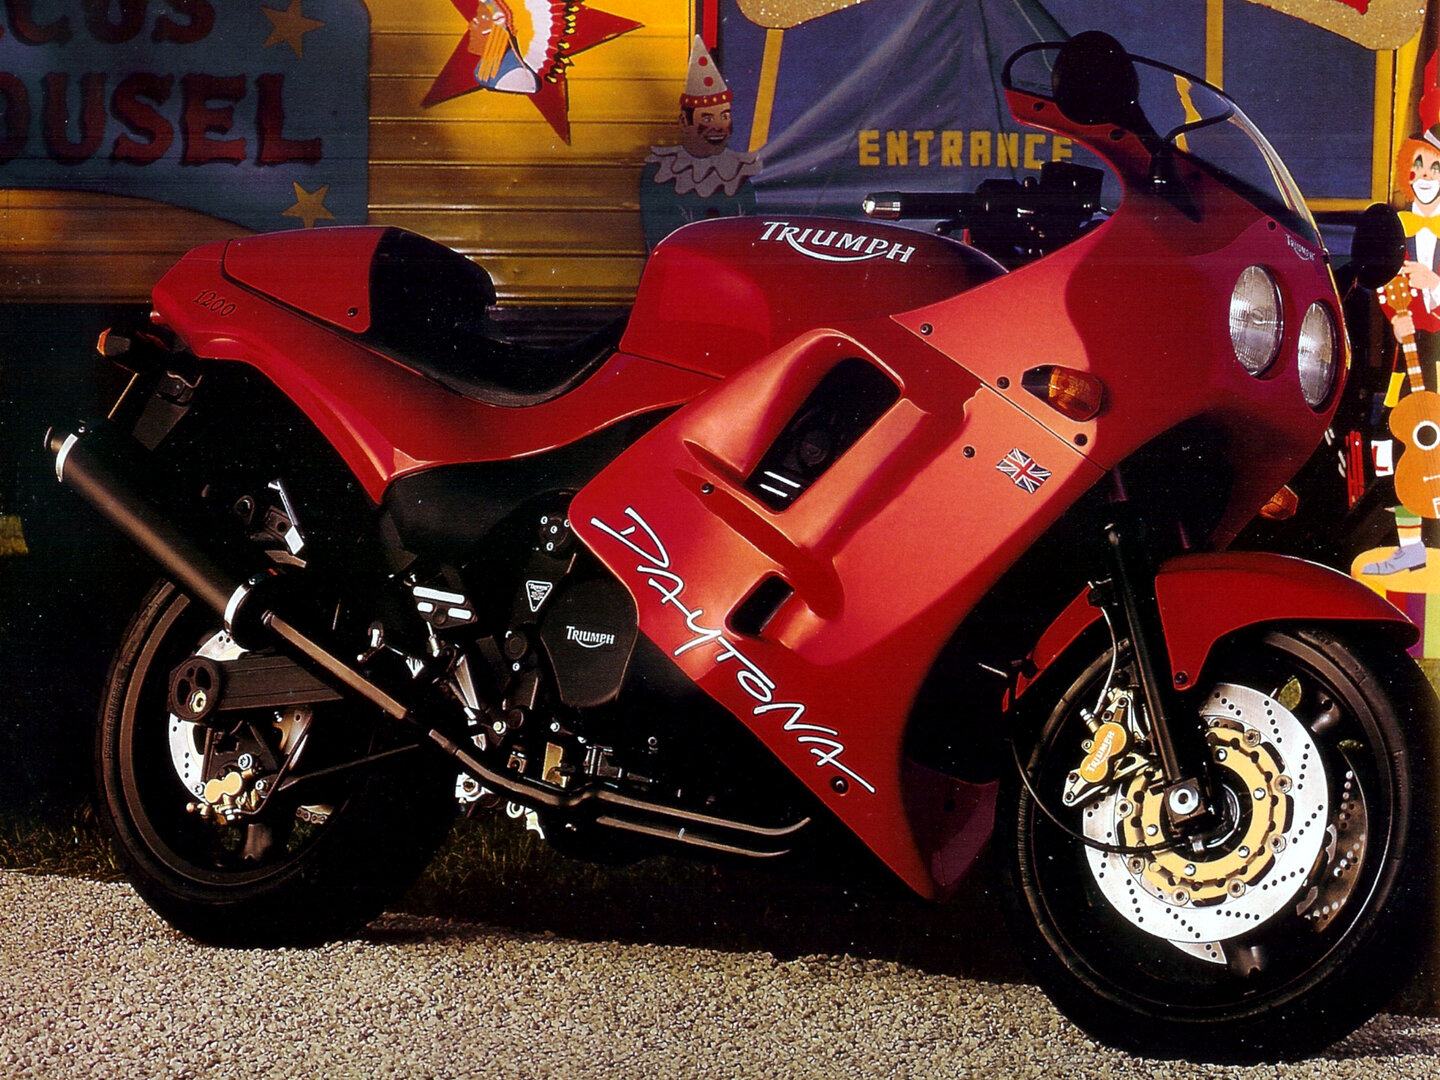 Moto del día: Triumph Daytona 1200